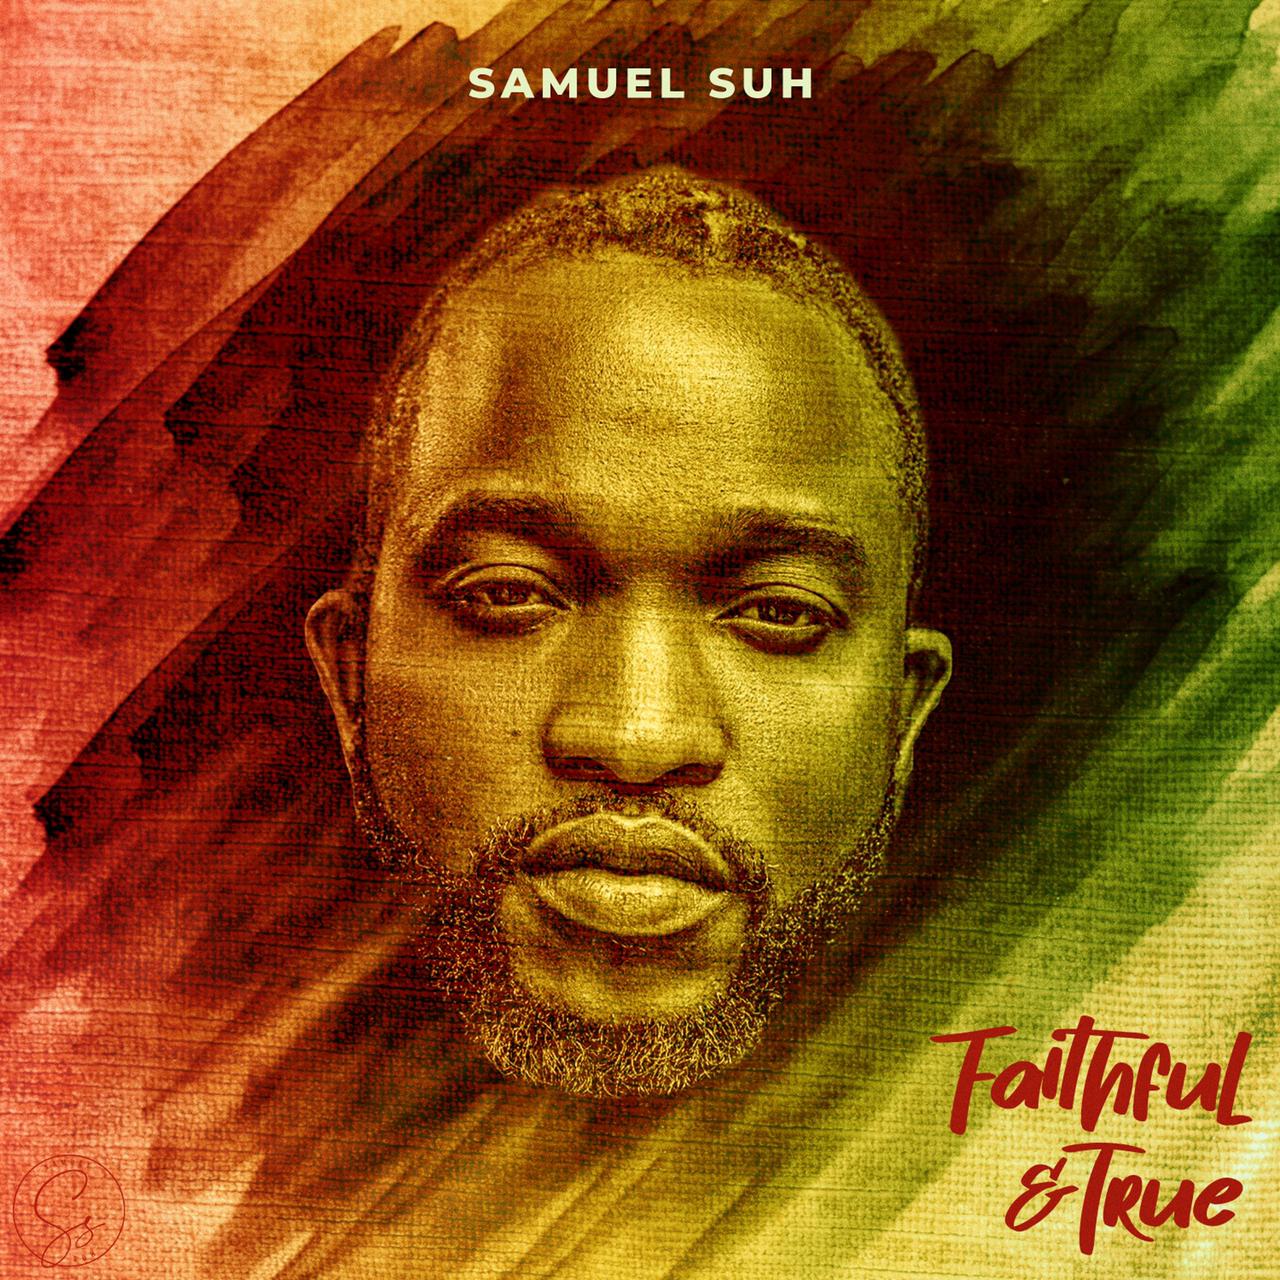 Samuel Suh - Faithful & True